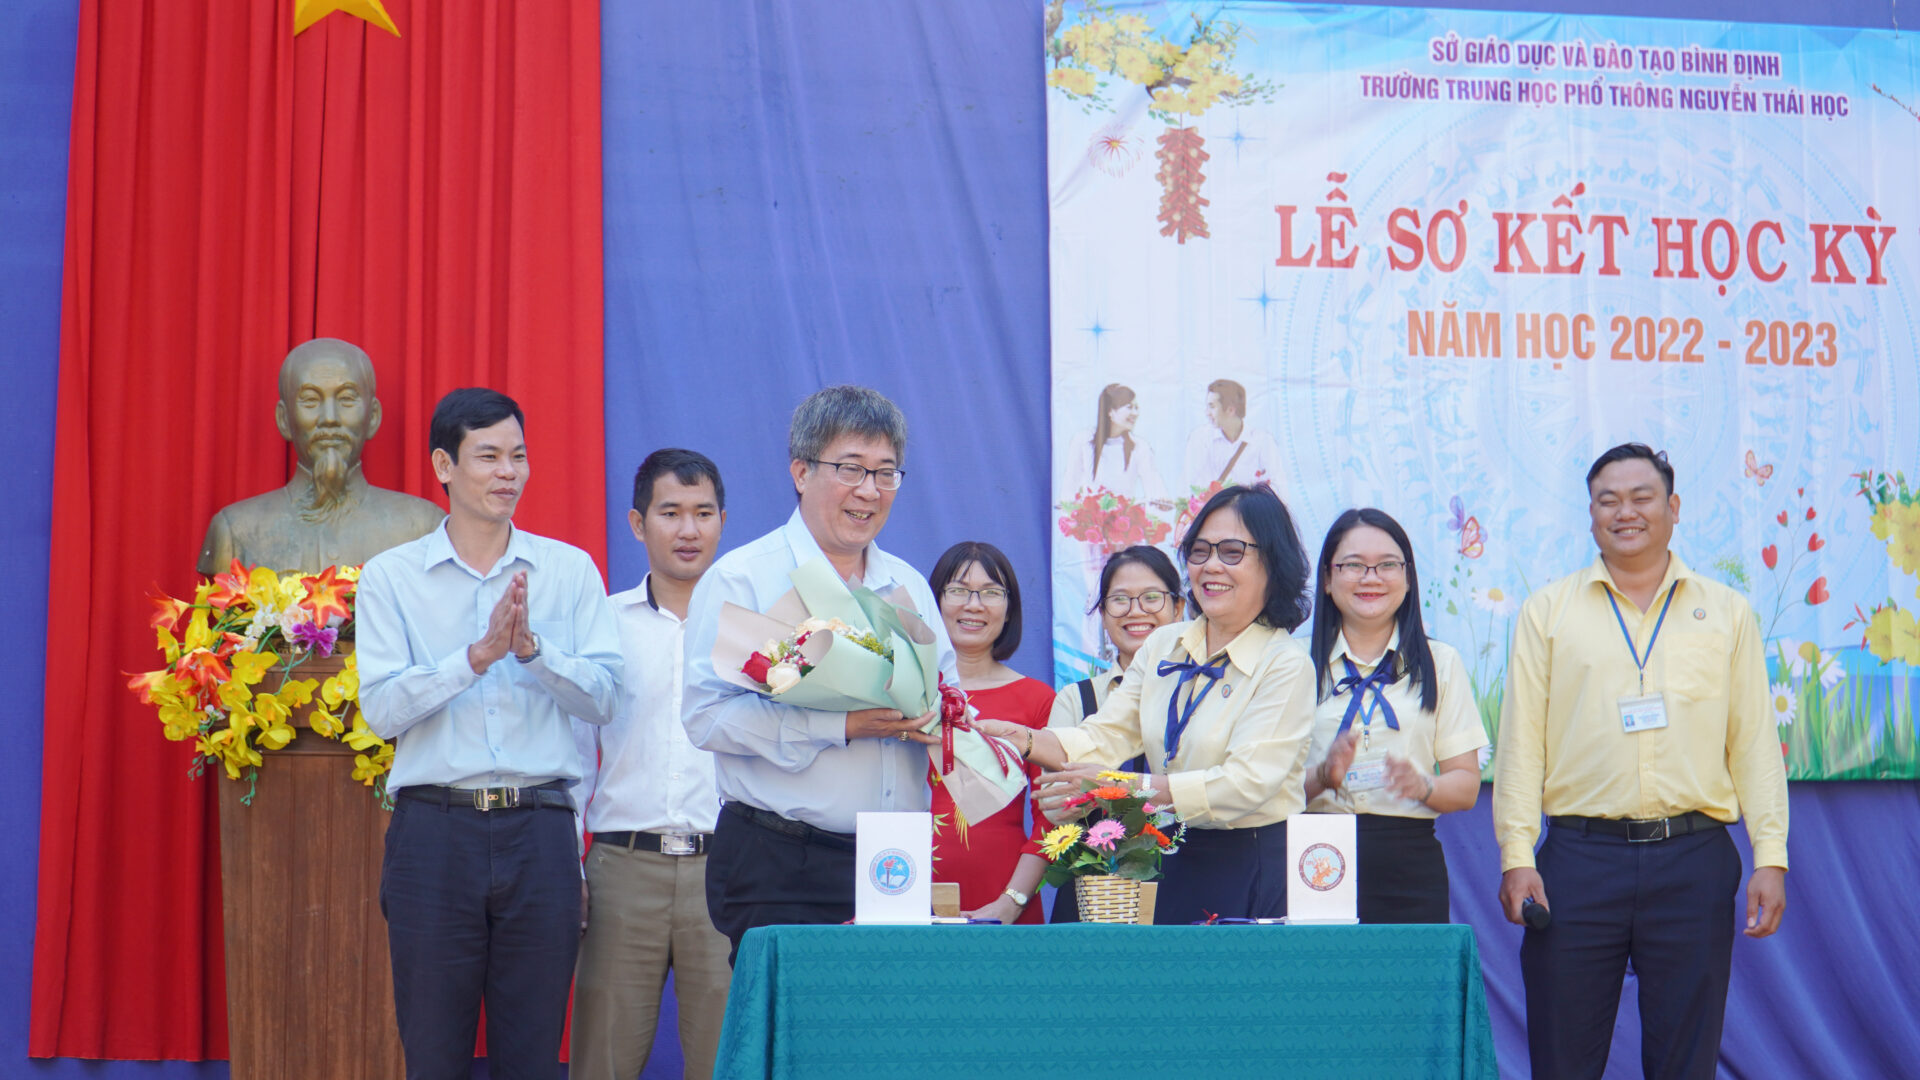 game bài đổi thuong
 kết nghĩa với Trường THPT Nguyễn Thái Học (Quy Nhơn)